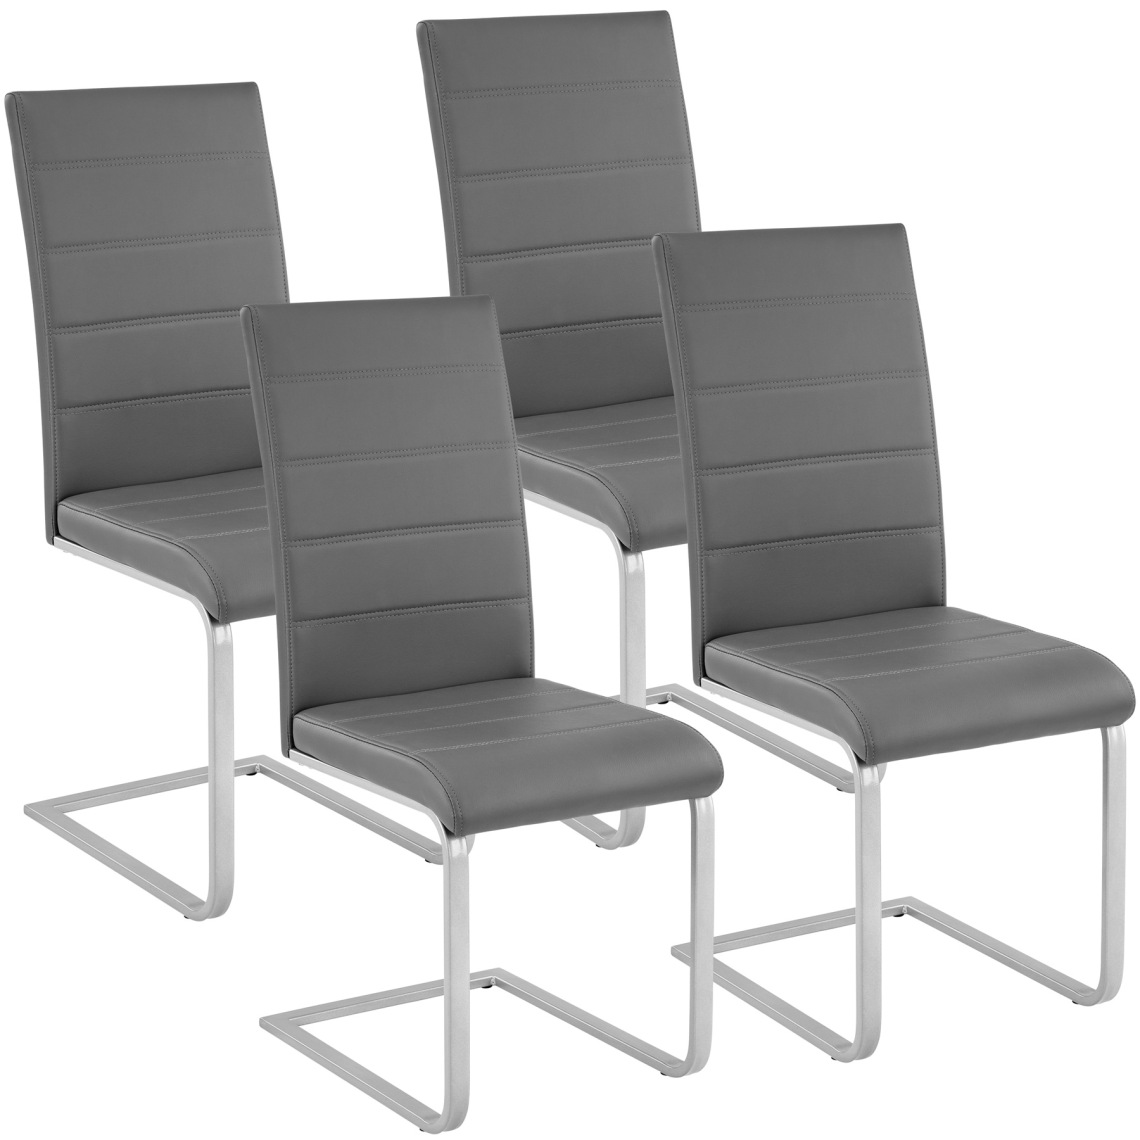 Tectake - 4 Chaises de Salle à Manger BETTINA Rembourrées Pieds en métal Argentés Design Moderne - gris - Chaises